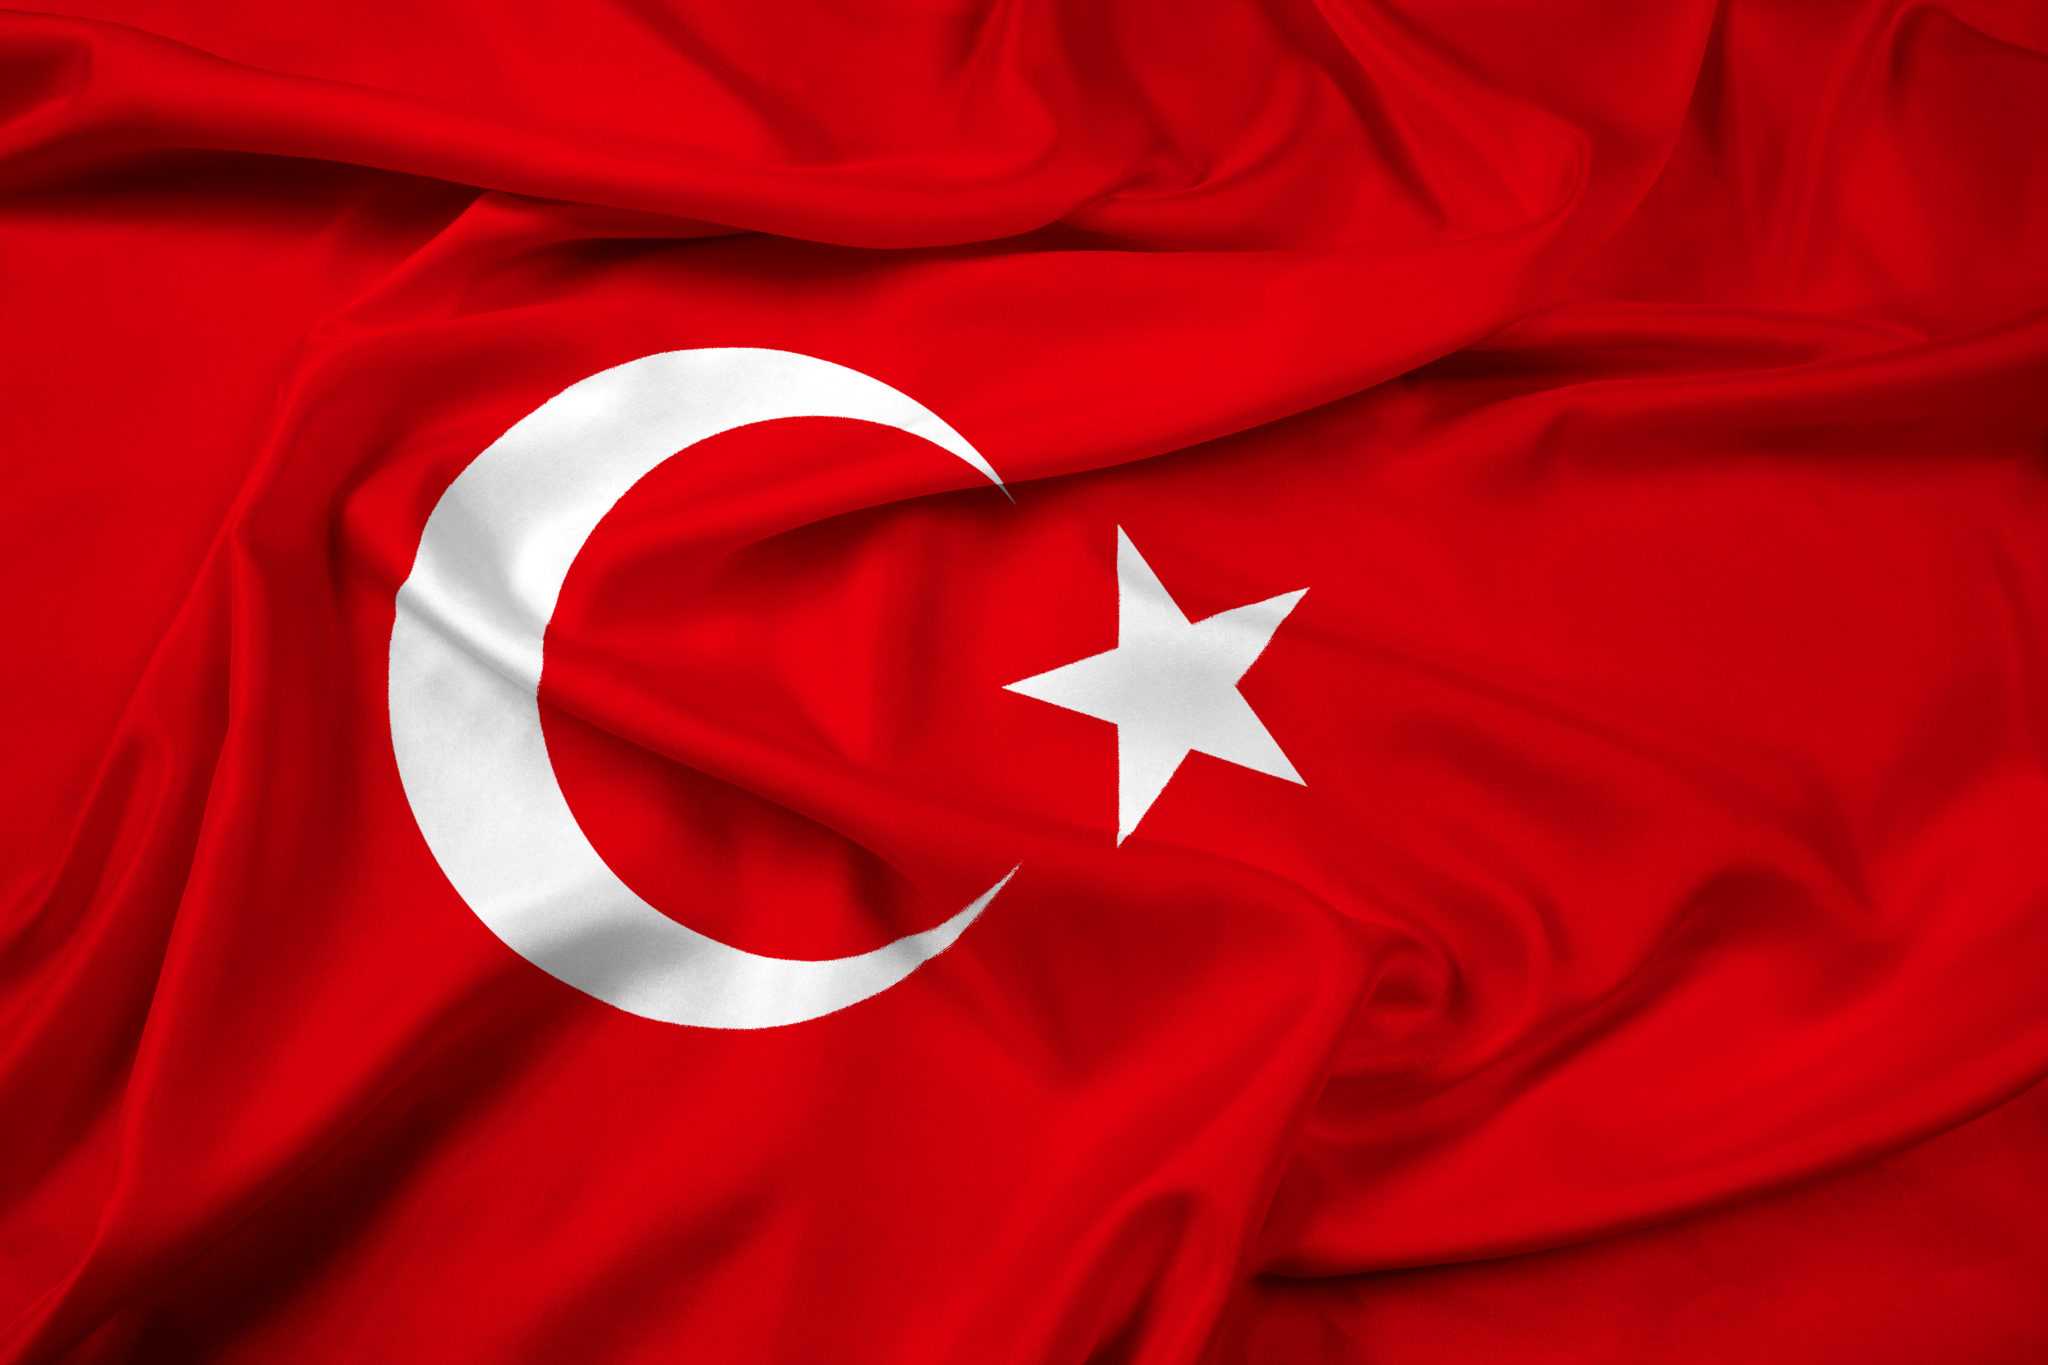 Сколько звезд на флаге турции. Турецкий флаг. Турецкое Знамя. Флаг Турции на черном фоне. Флаг Турции до 1844.